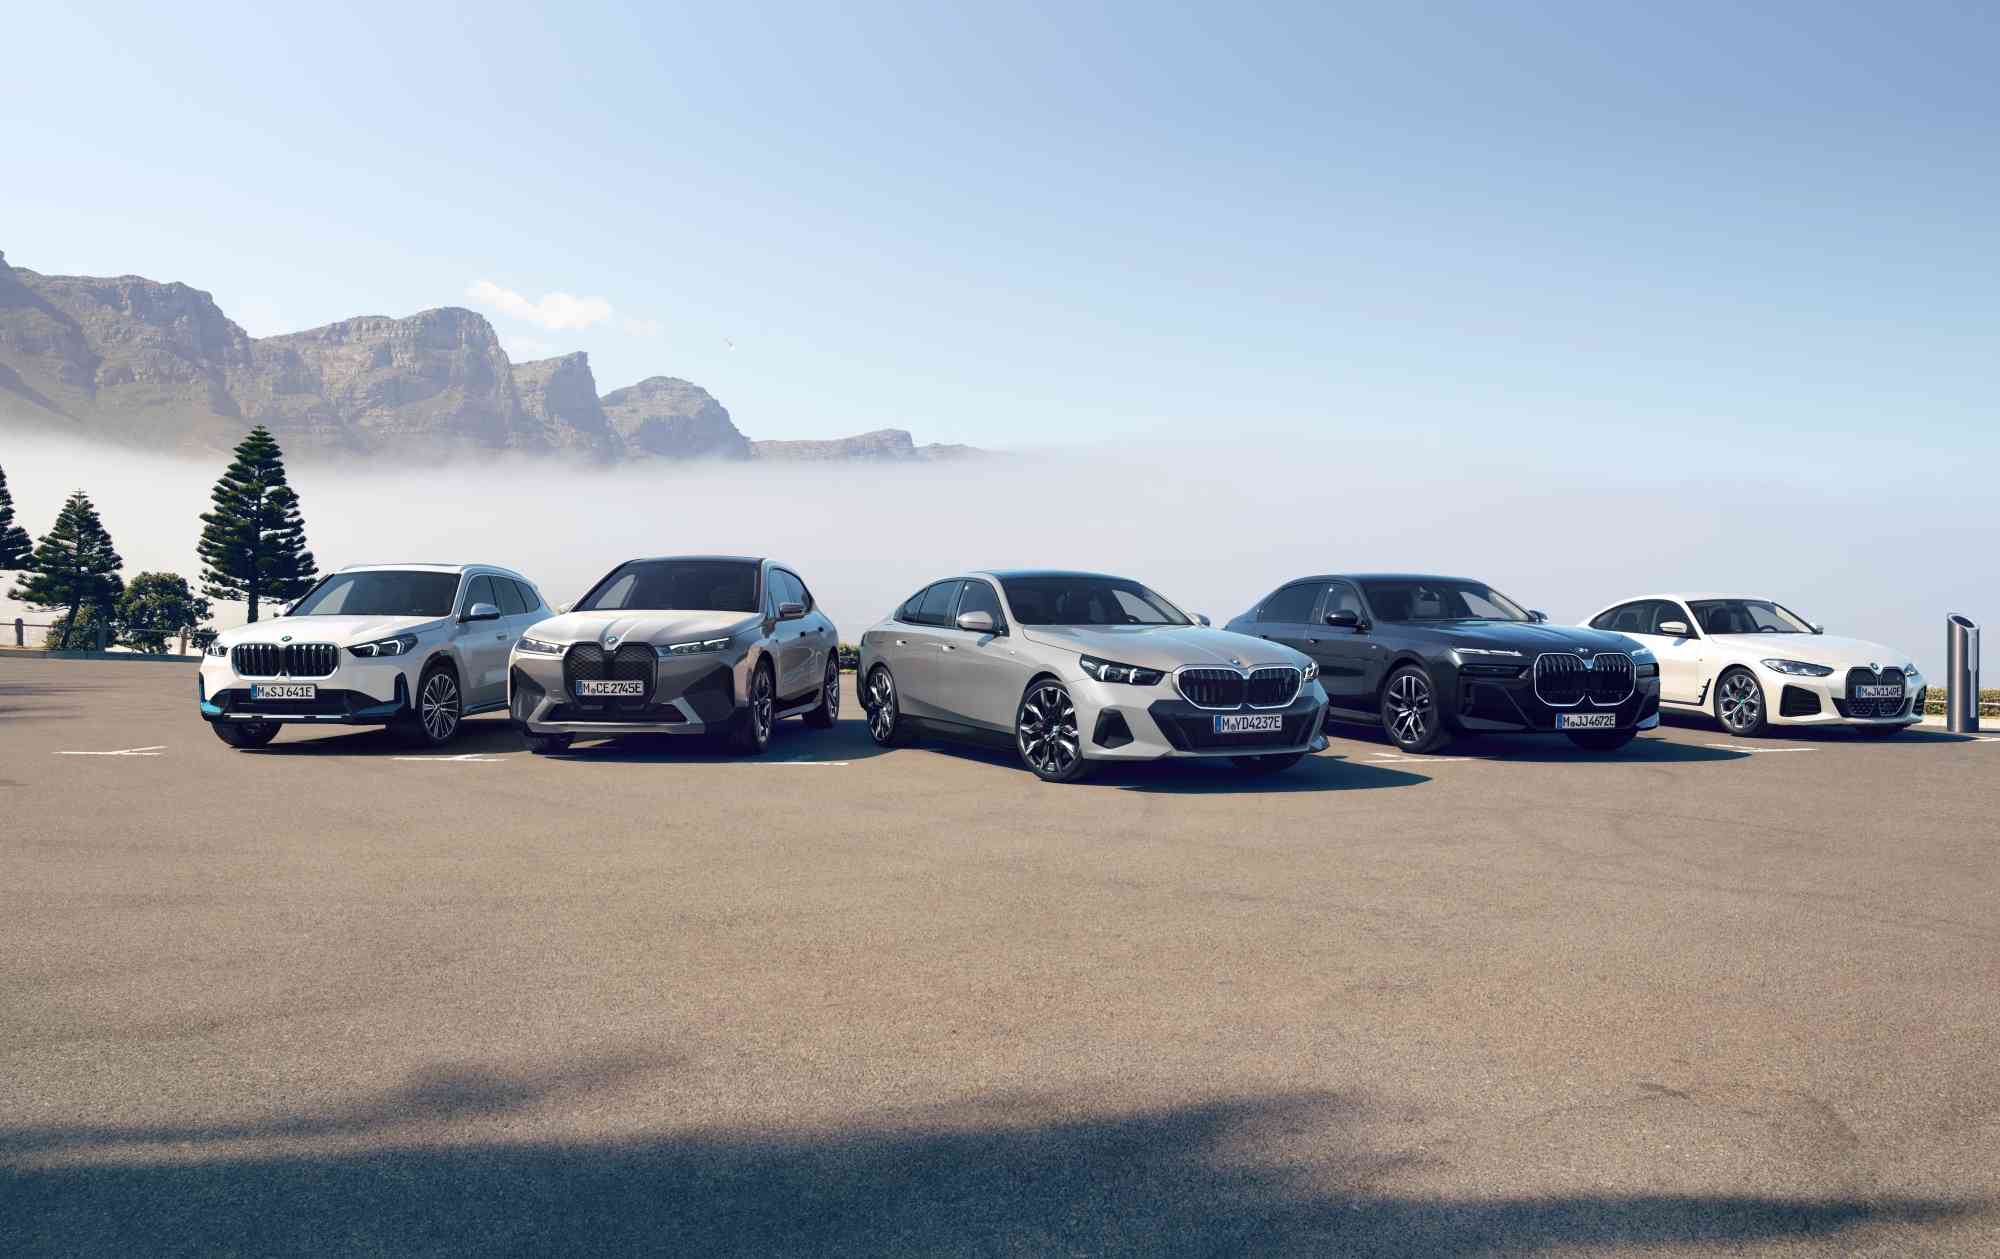 延續銷售氣勢 BMW豪華電動車成長勢如破竹全新BMW iX領軍BMW i純電大軍 台灣銷售持續奪冠